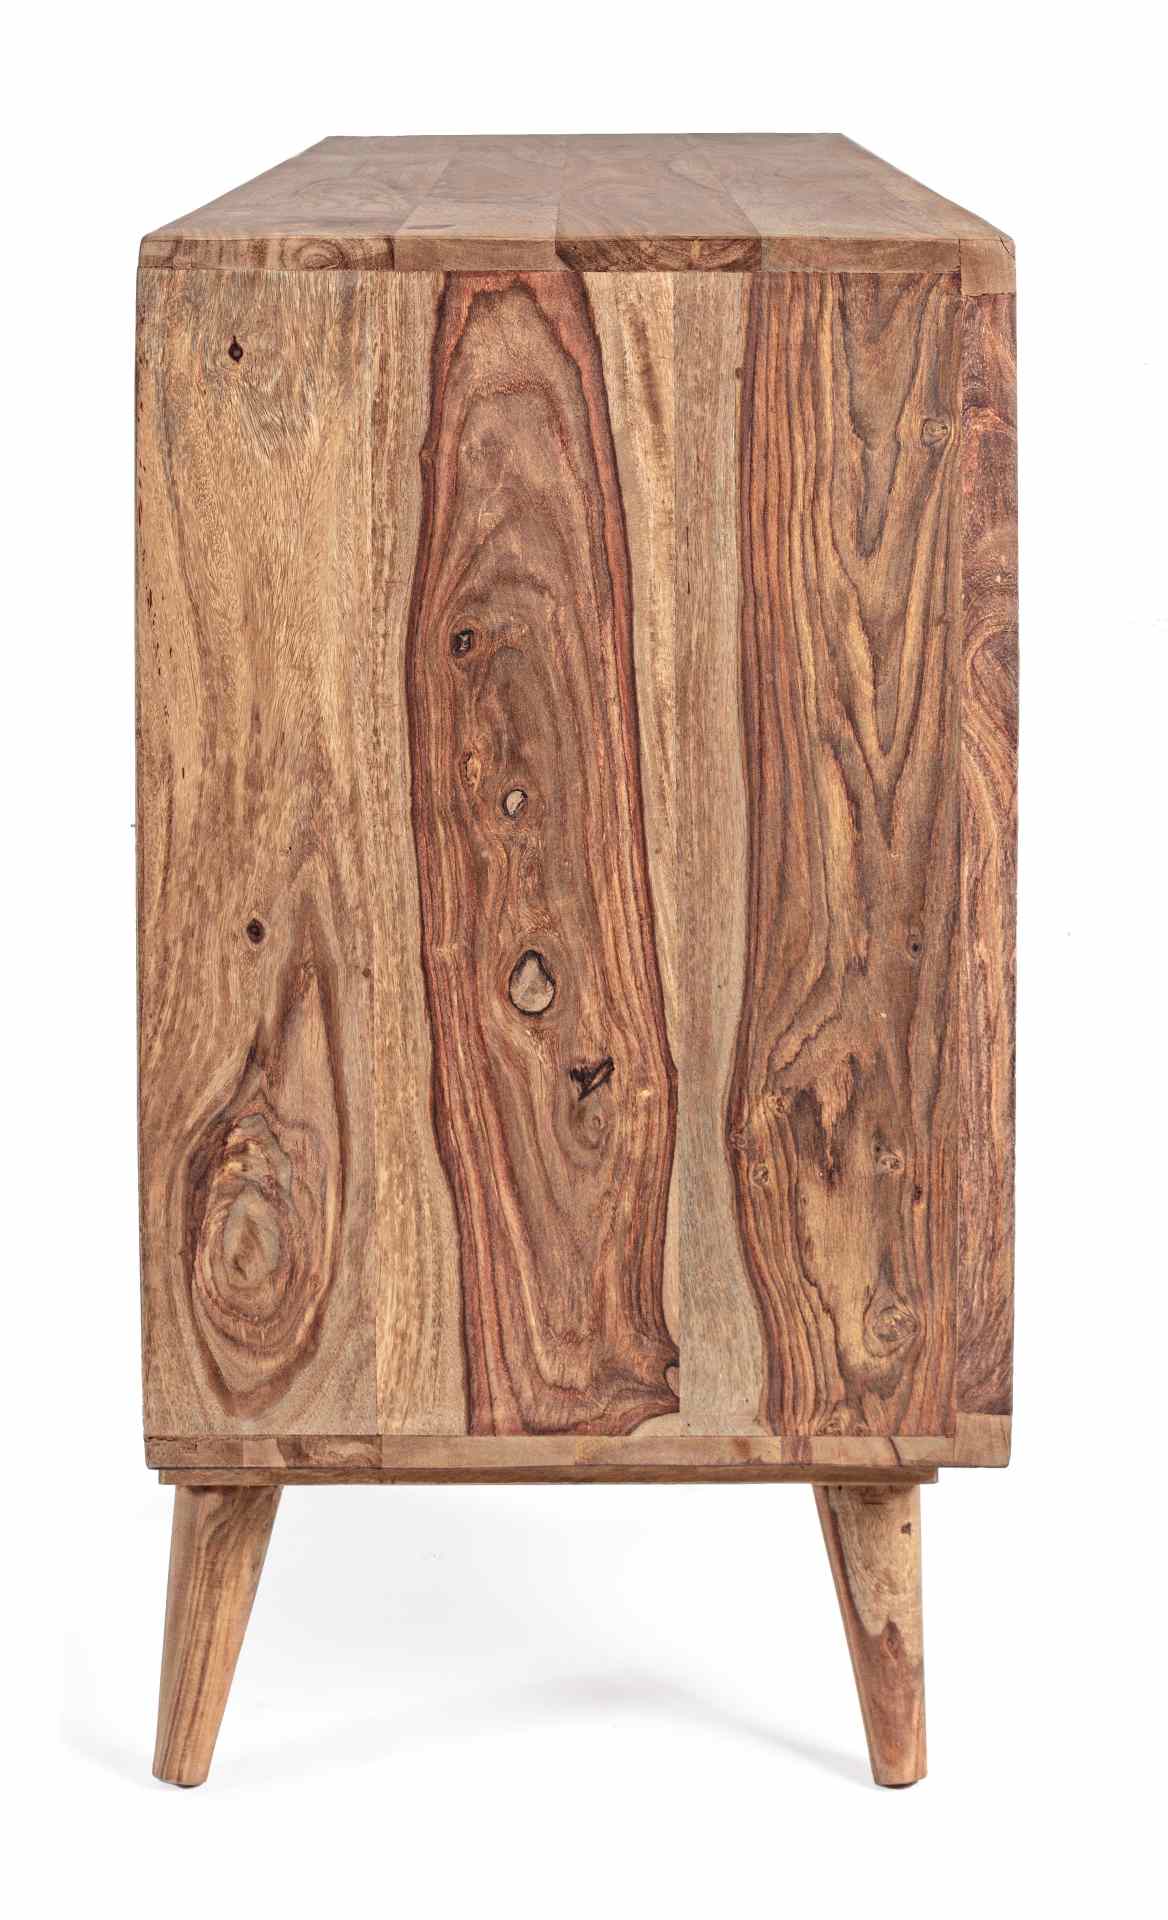 Das Sideboard Kant überzeugt mit seinem modernem Design. Gefertigt wurde es aus Sheeshamholz, welches einen natürlichen Farbton besitzt. Das Gestell ist auch aus Sheeshamholz. Das Sideboard verfügt über drei Türen und drei Schubladen. Die Breite beträgt 1